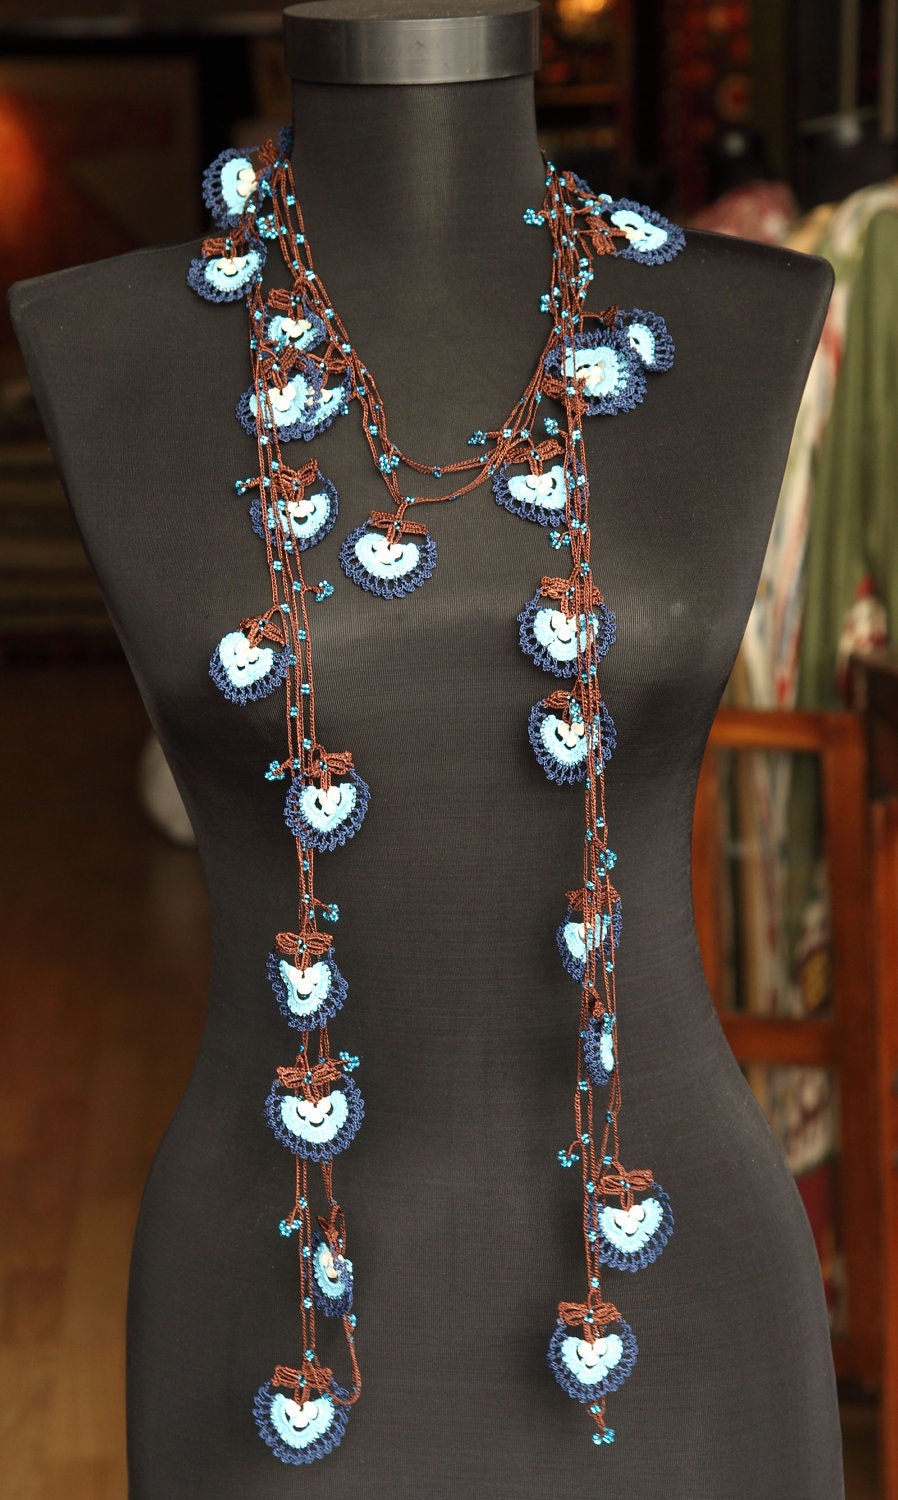 turkish lace - needle lace - oya necklace - FREE SHIPMENT - 016-02